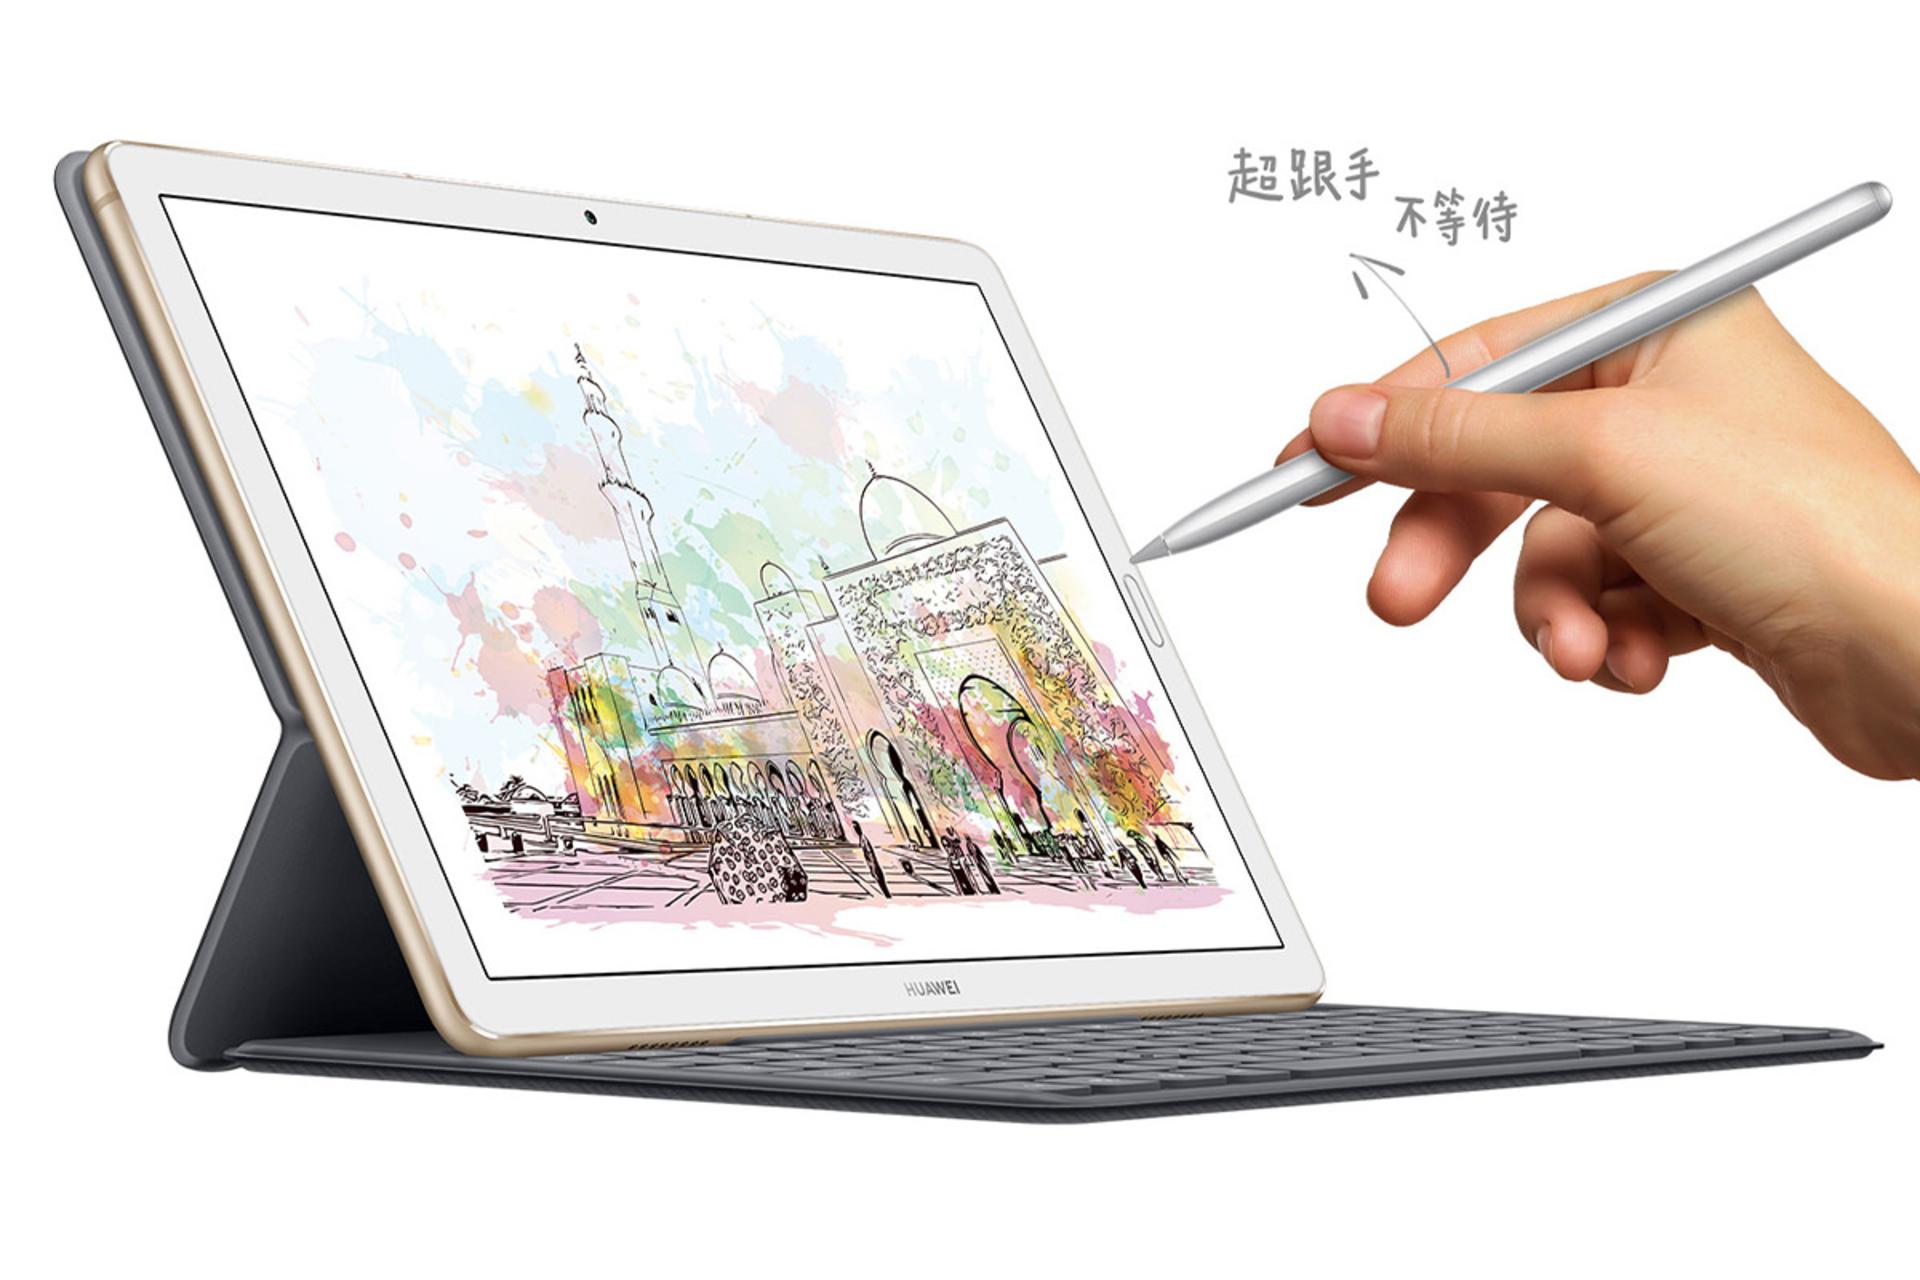 مرجع متخصصين ايران تبلت ميت پد 10.8 هواوي نماي جلو - صفحه نمايش - قلم - صفحه كليد / Huawei MatePad 10.8